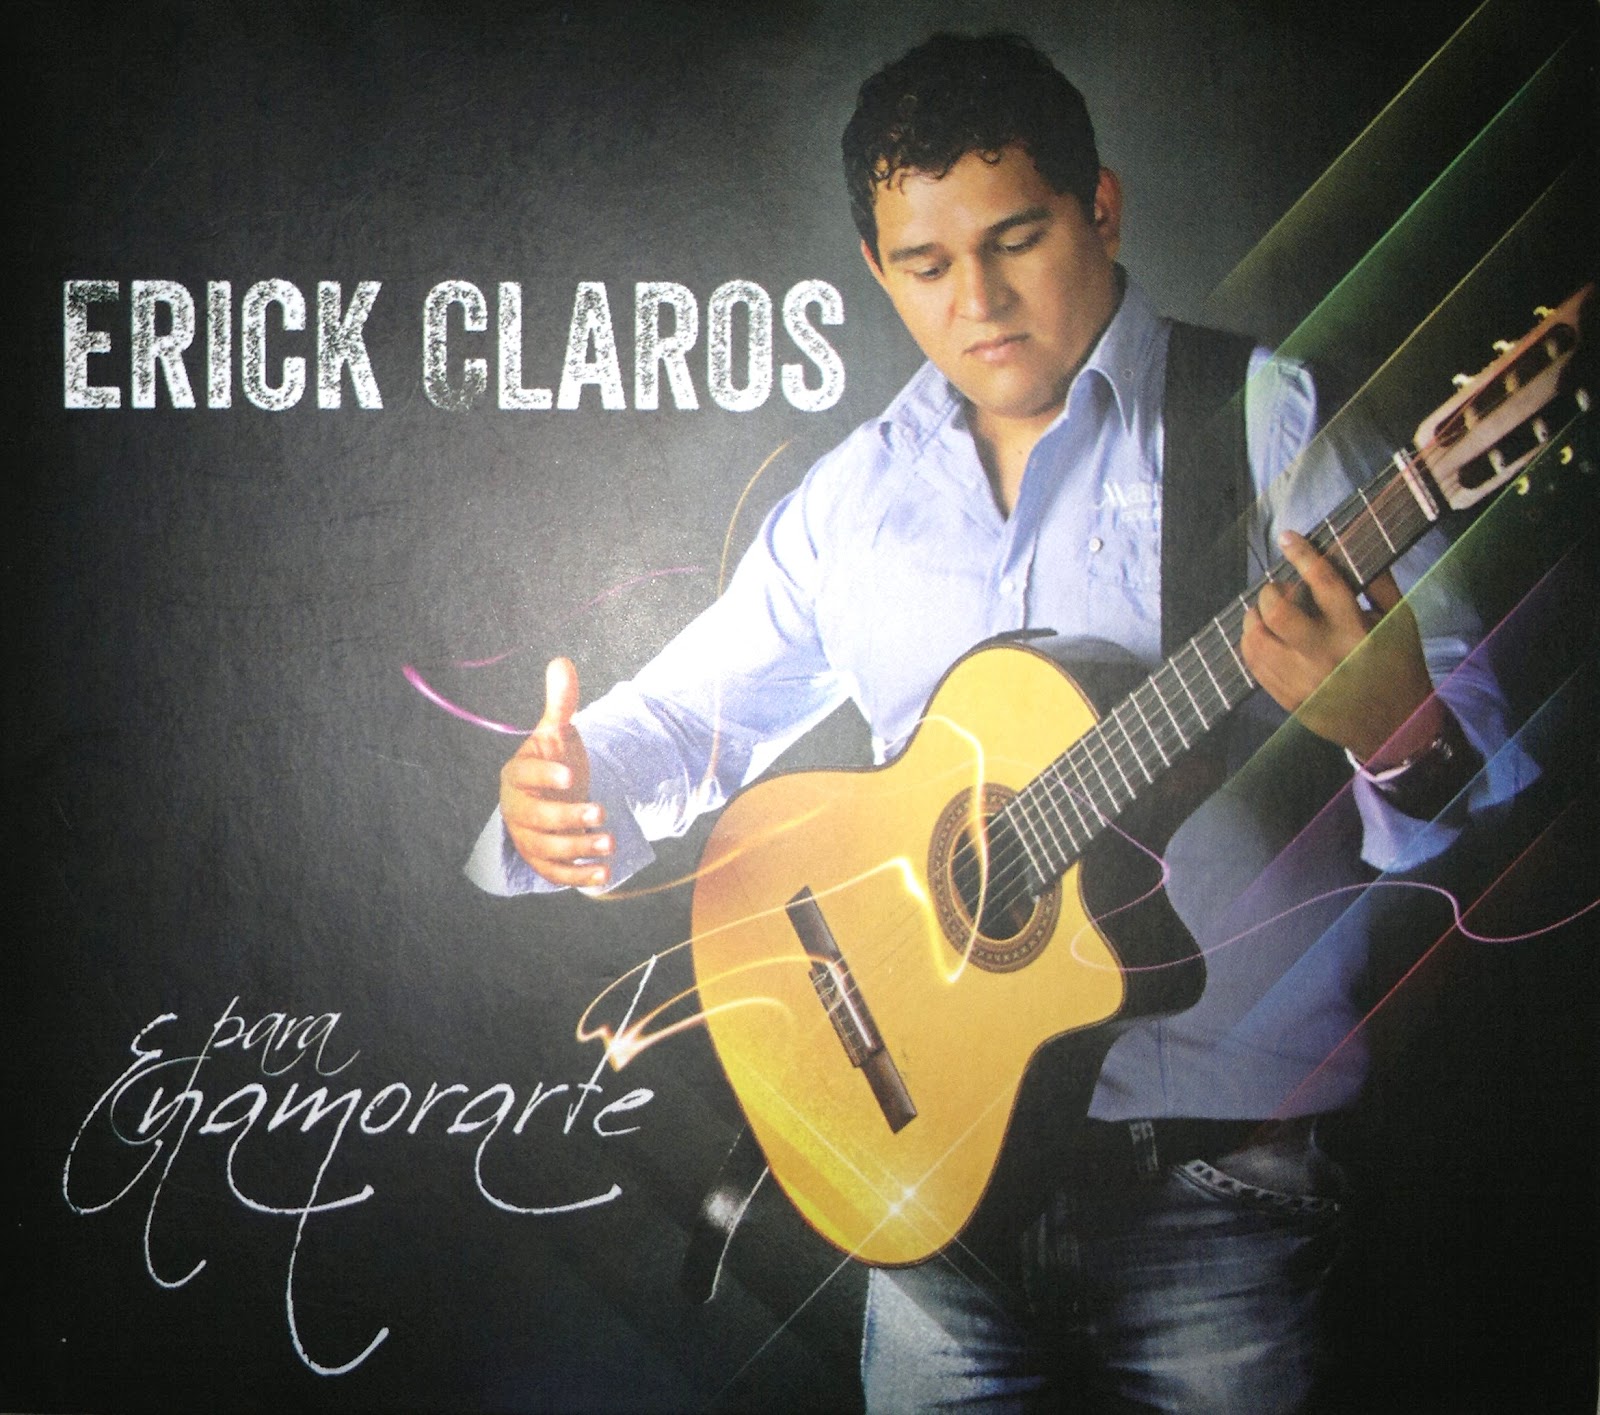 Erick Claros